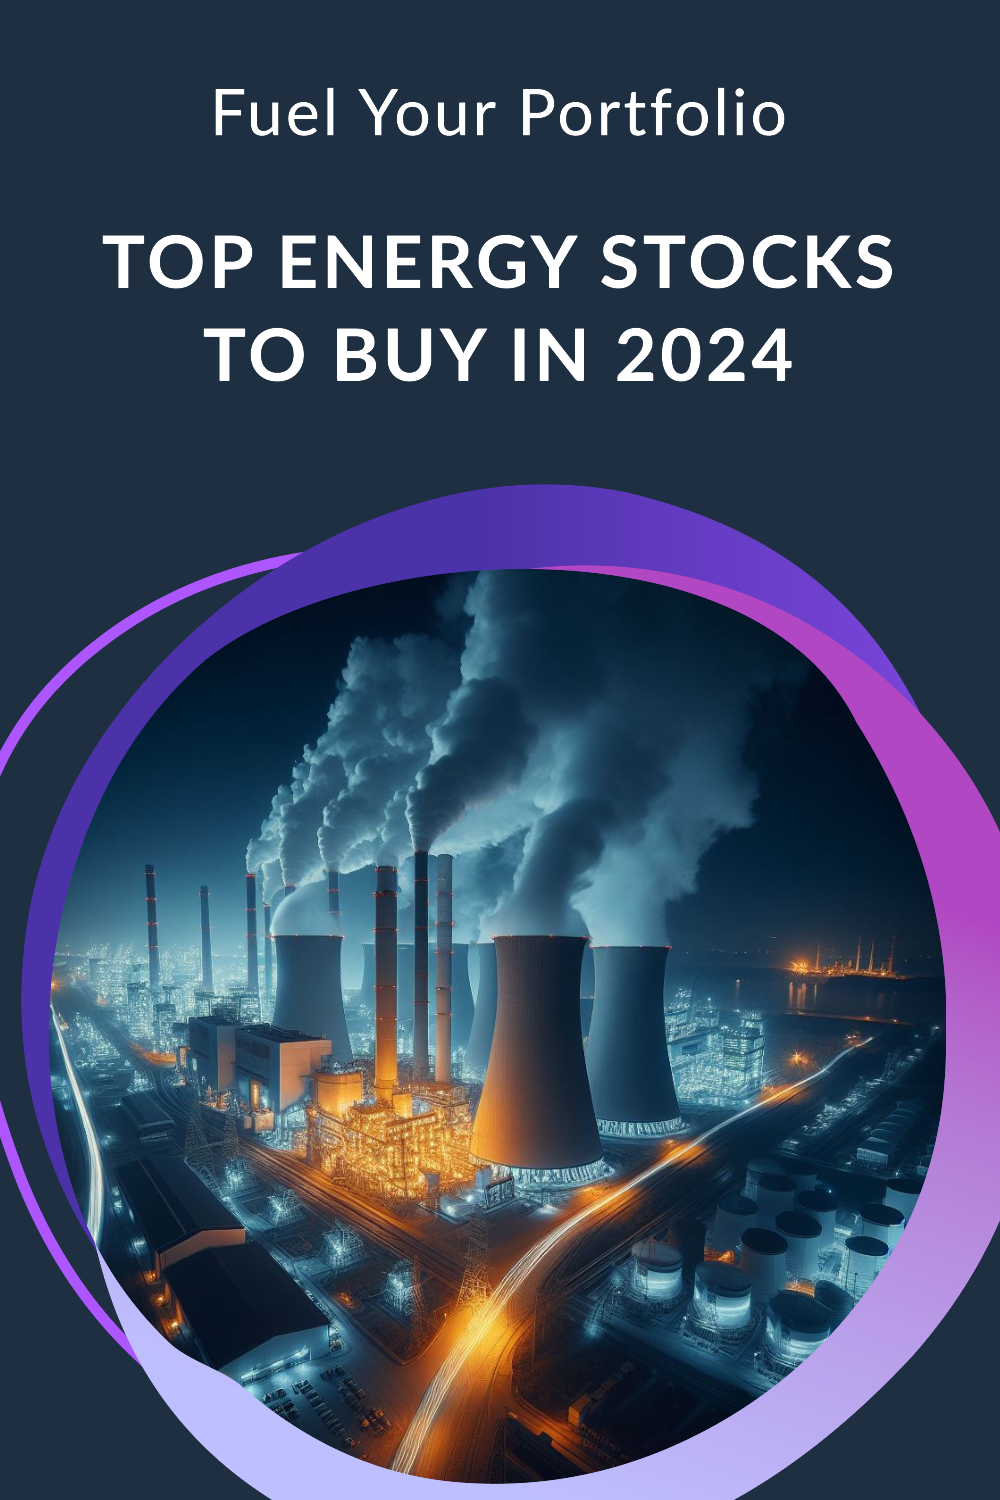 Fuel your portfolio: Top energy stocks to buy in 2024